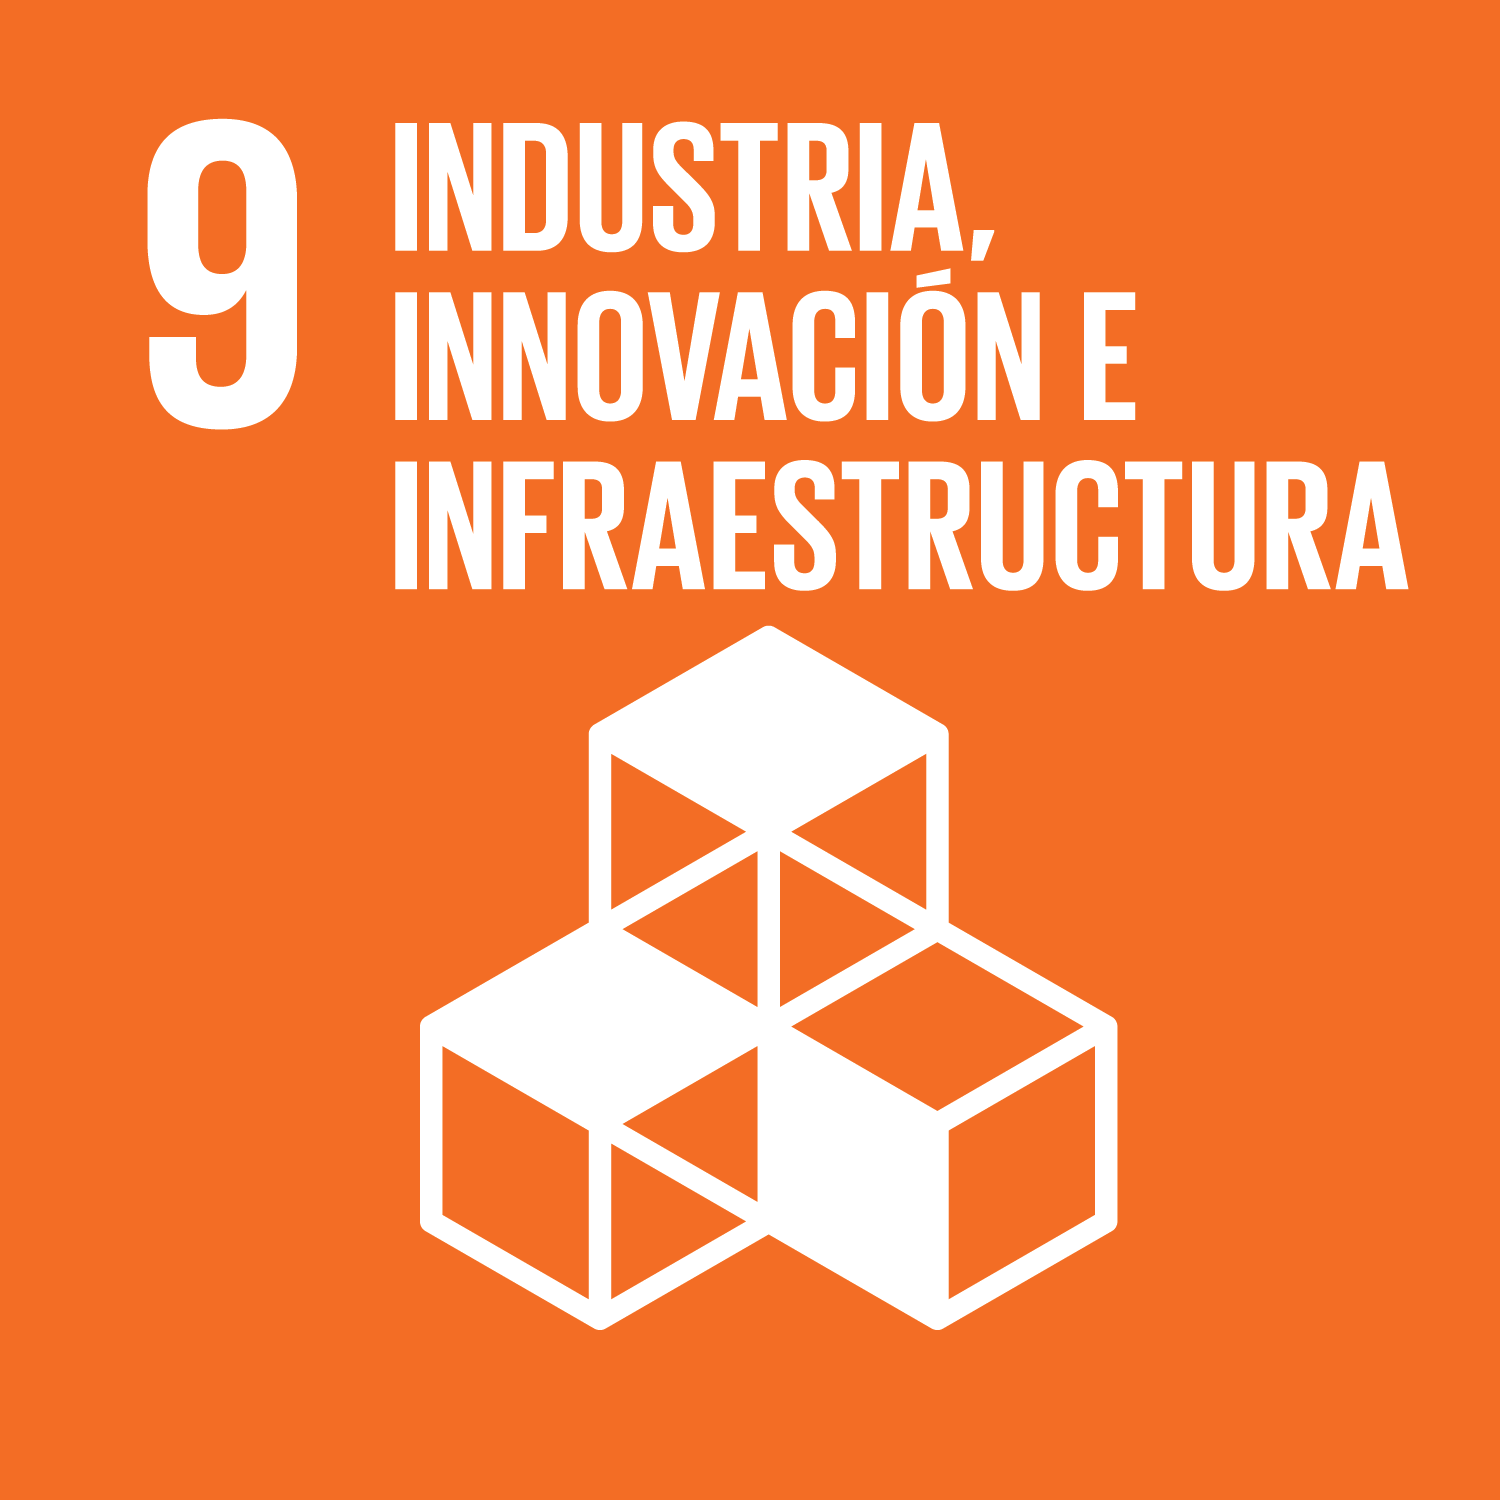 ODS Objetivo 9: Industria, innovación e infraestructura